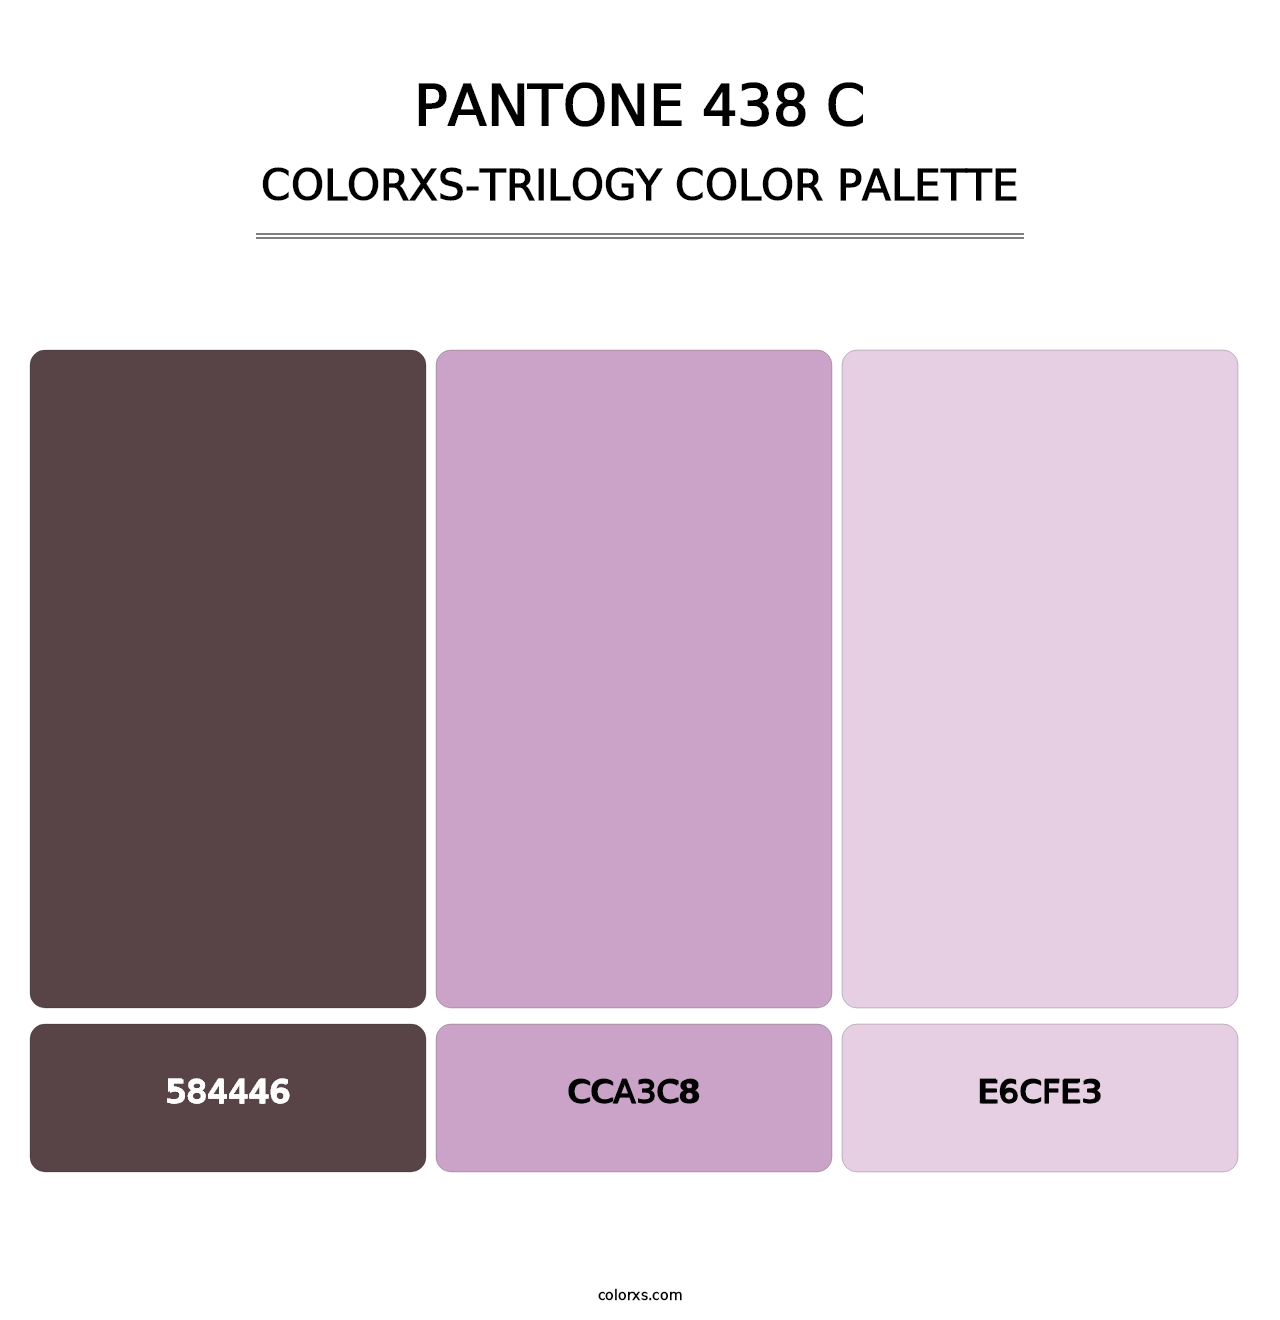 PANTONE 438 C - Colorxs Trilogy Palette